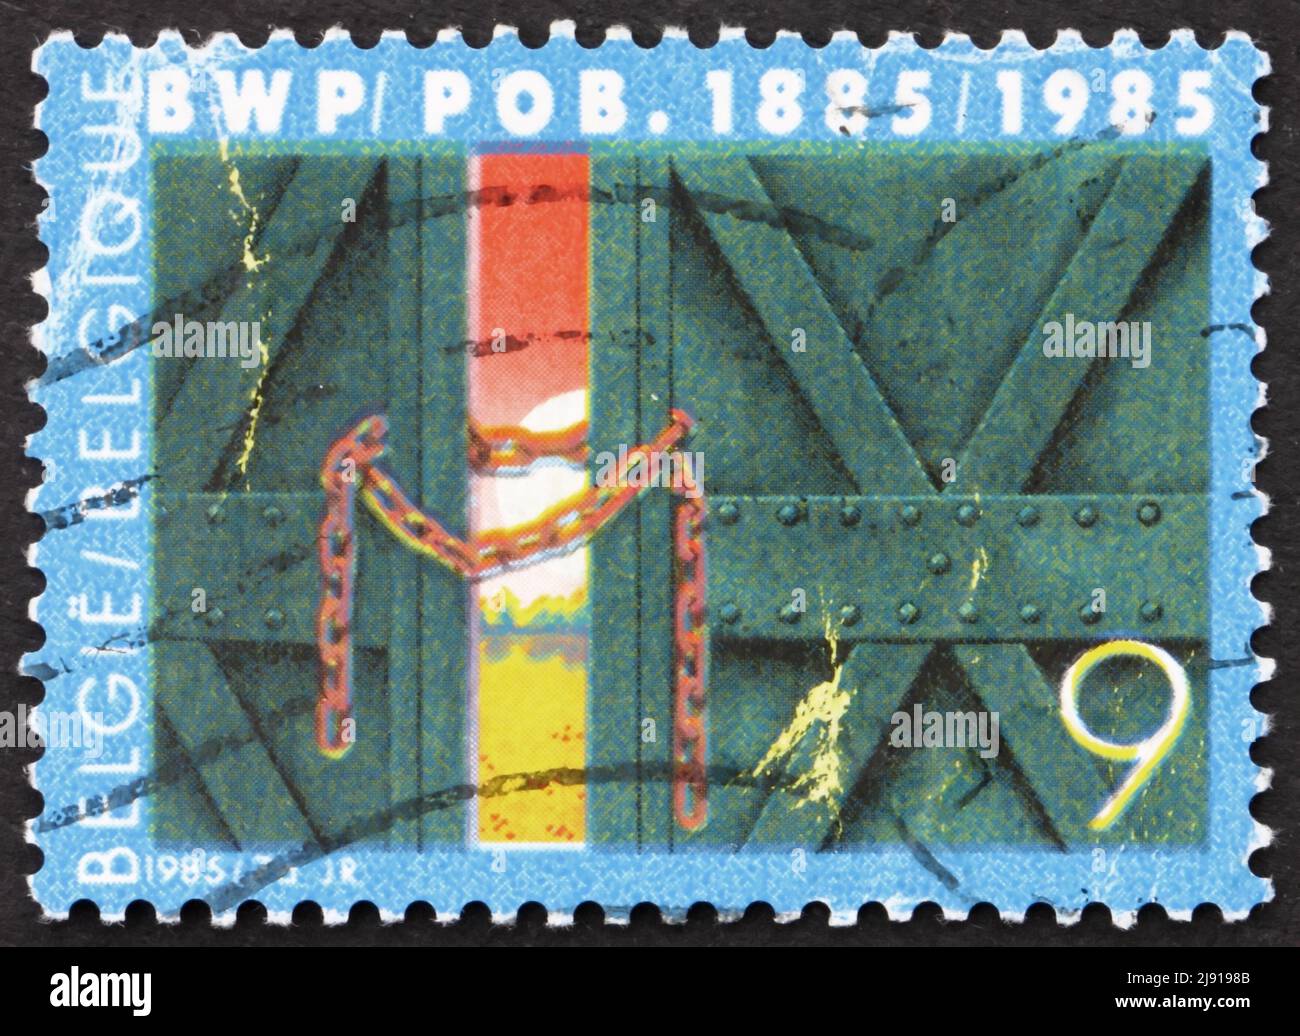 BELGIEN - UM 1985: Eine in Belgien gedruckte Briefmarke zeigt das verkettete Fabriktor, 100. Jahrestag der belgischen Arbeiterpartei, um 1985 Stockfoto